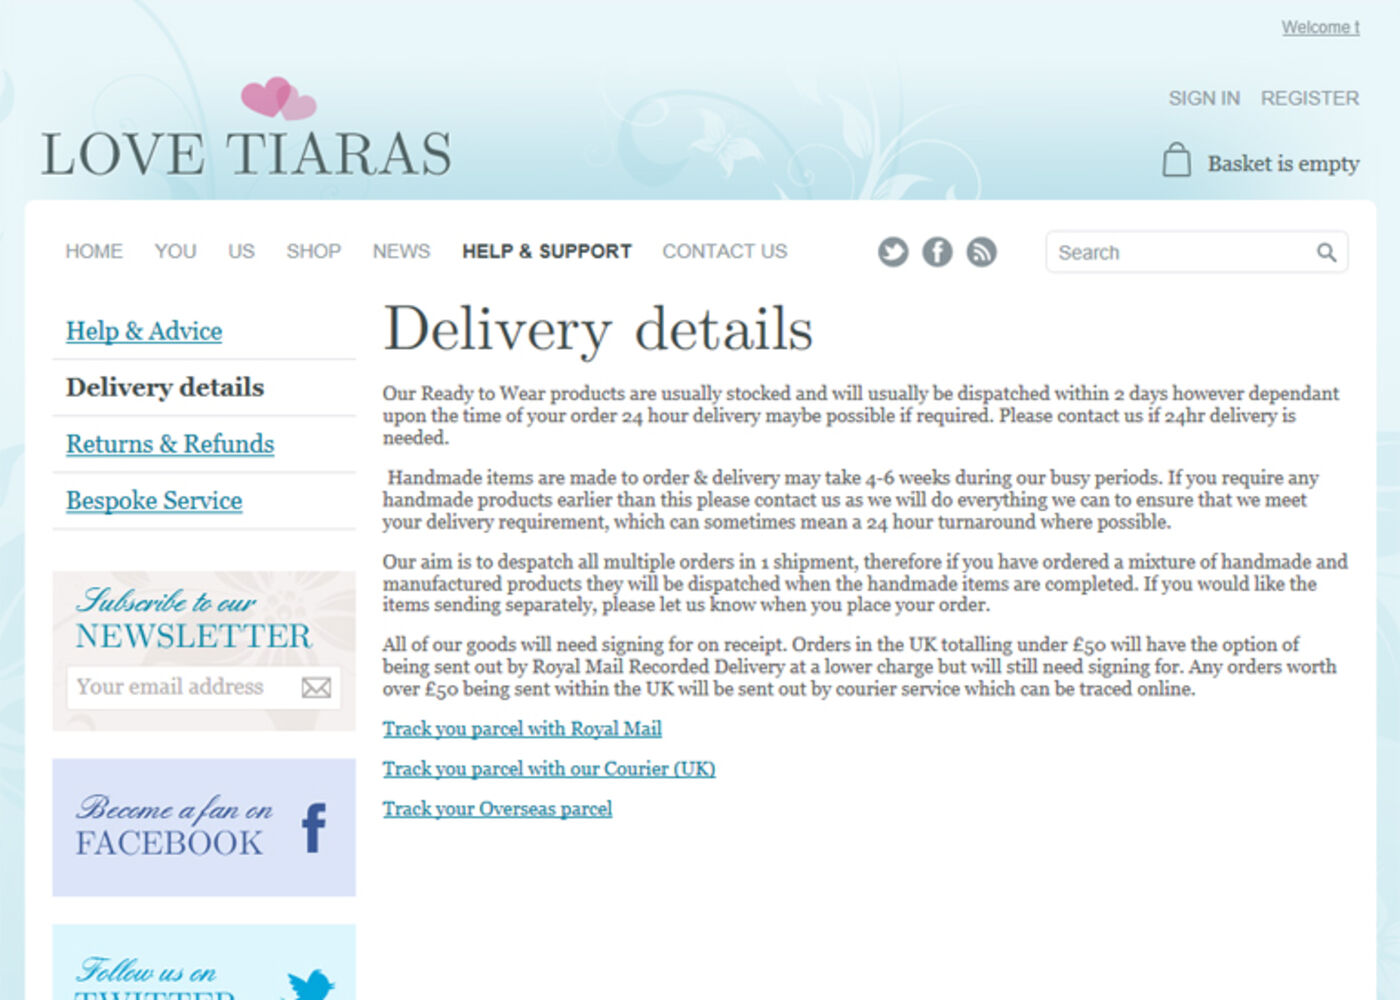 Love Tiaras Regular page